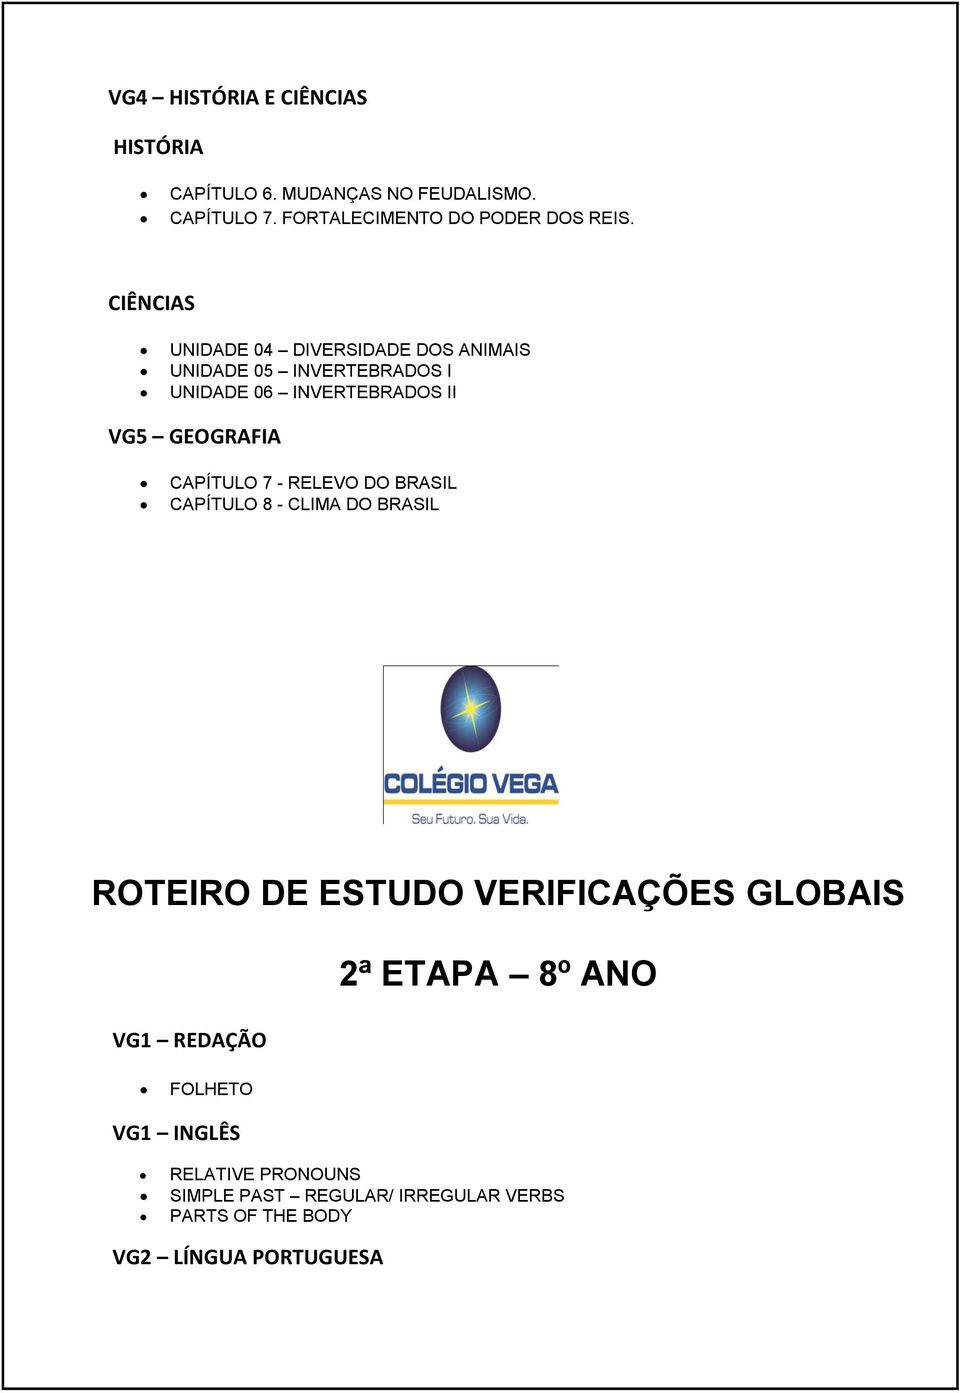 CAPÍTULO 7 - RELEVO DO BRASIL CAPÍTULO 8 - CLIMA DO BRASIL ROTEIRO DE ESTUDO VERIFICAÇÕES GLOBAIS VG1 REDAÇÃO 2ª